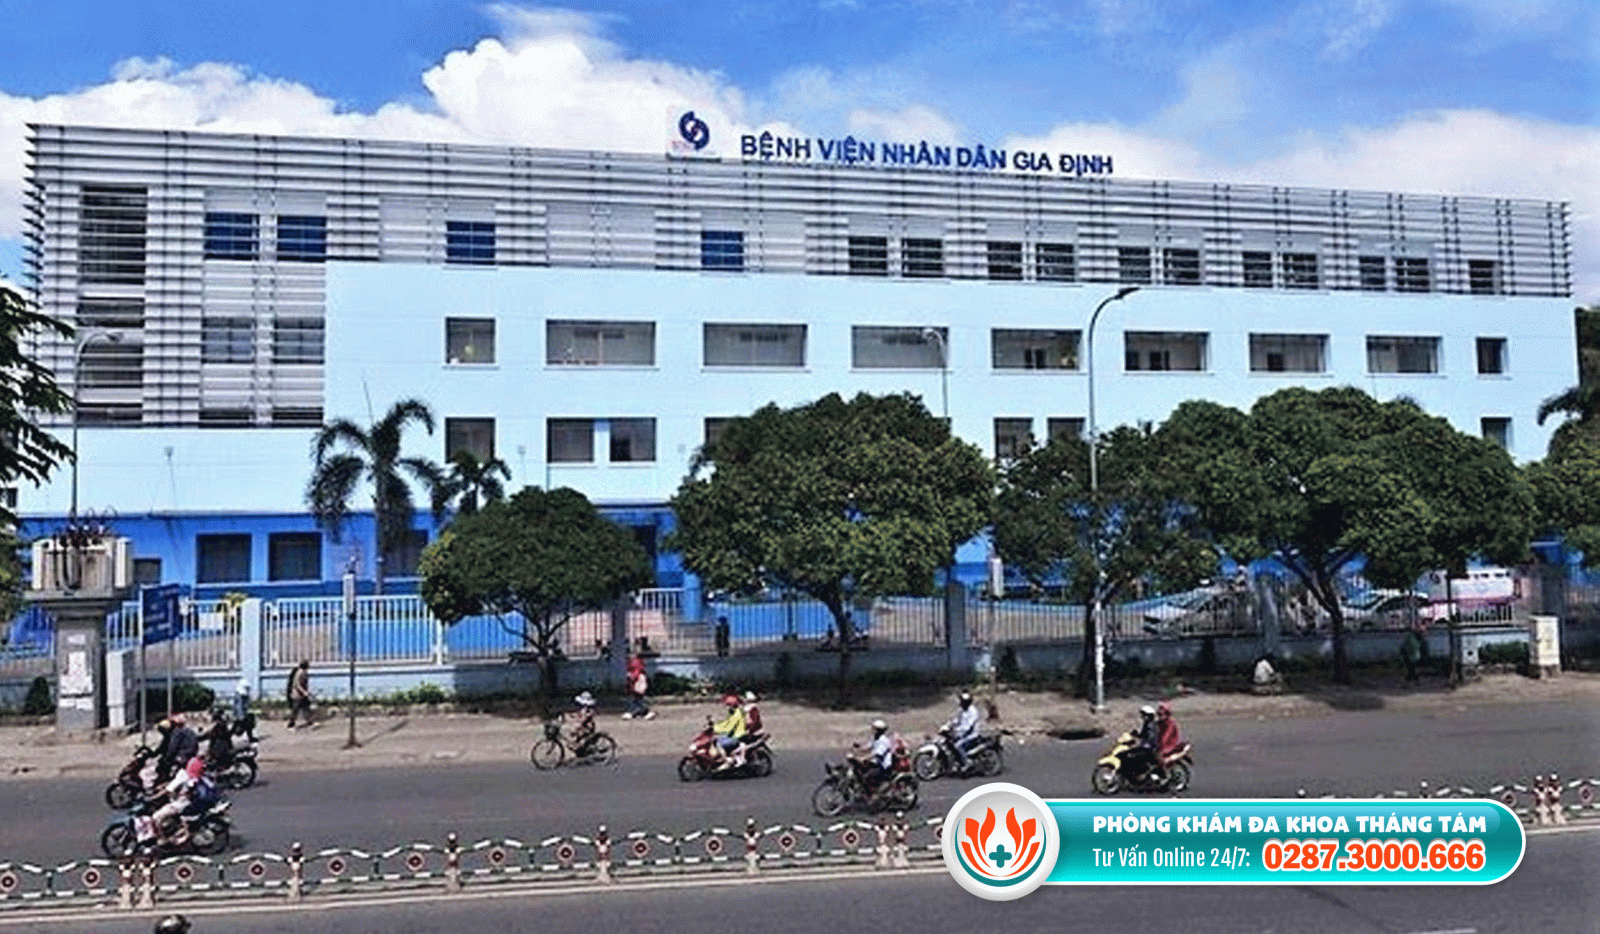 Bệnh viện Nhân dân Gia Định là địa chỉ khám nam khoa quận Bình Thạnh